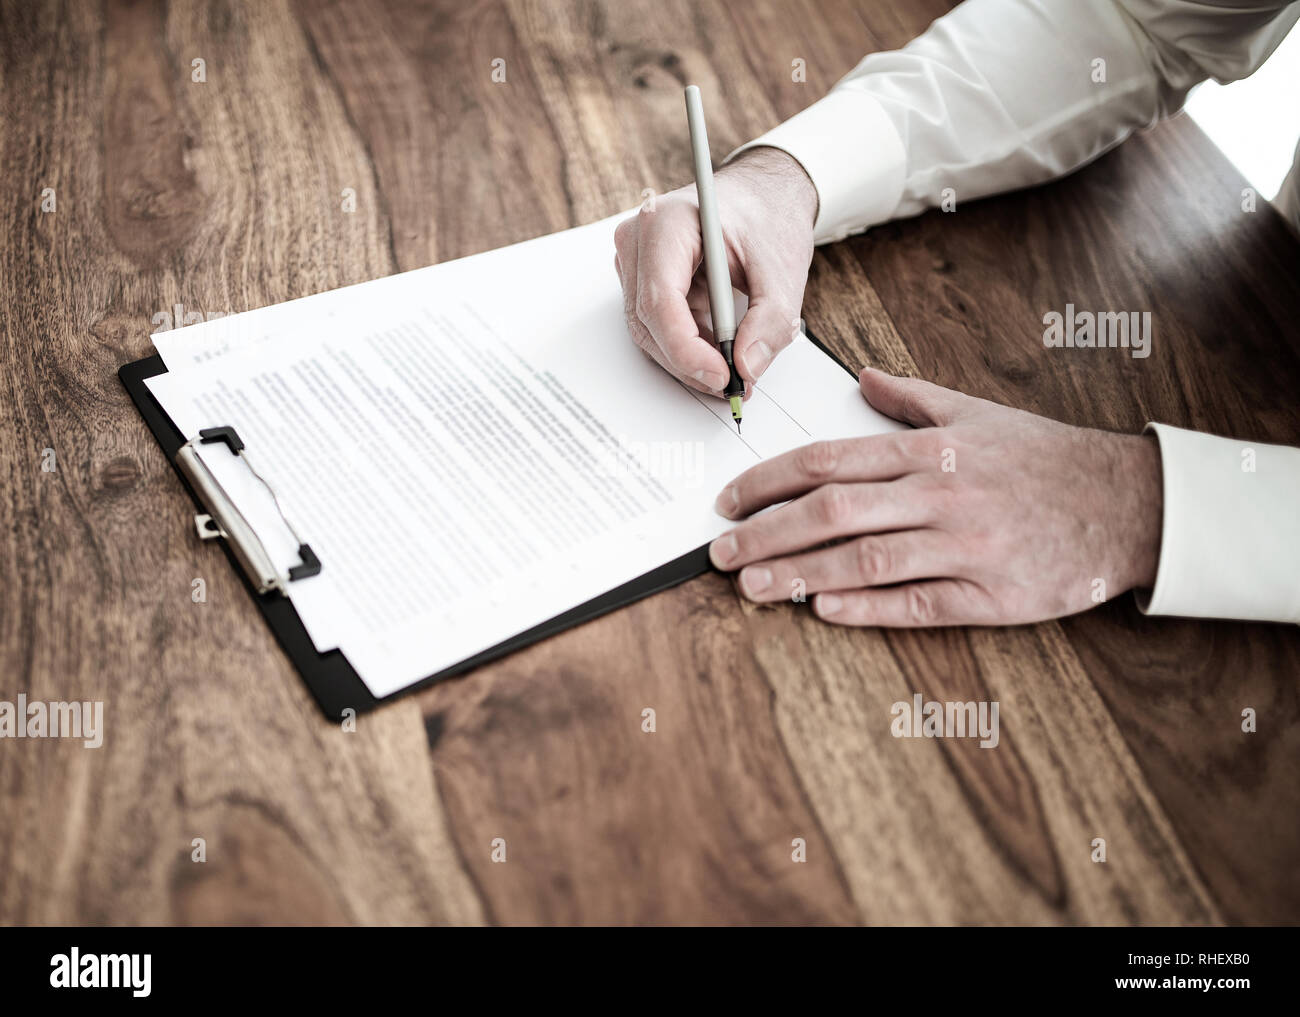 Homme signature contrat ou document au bureau en bois Banque D'Images